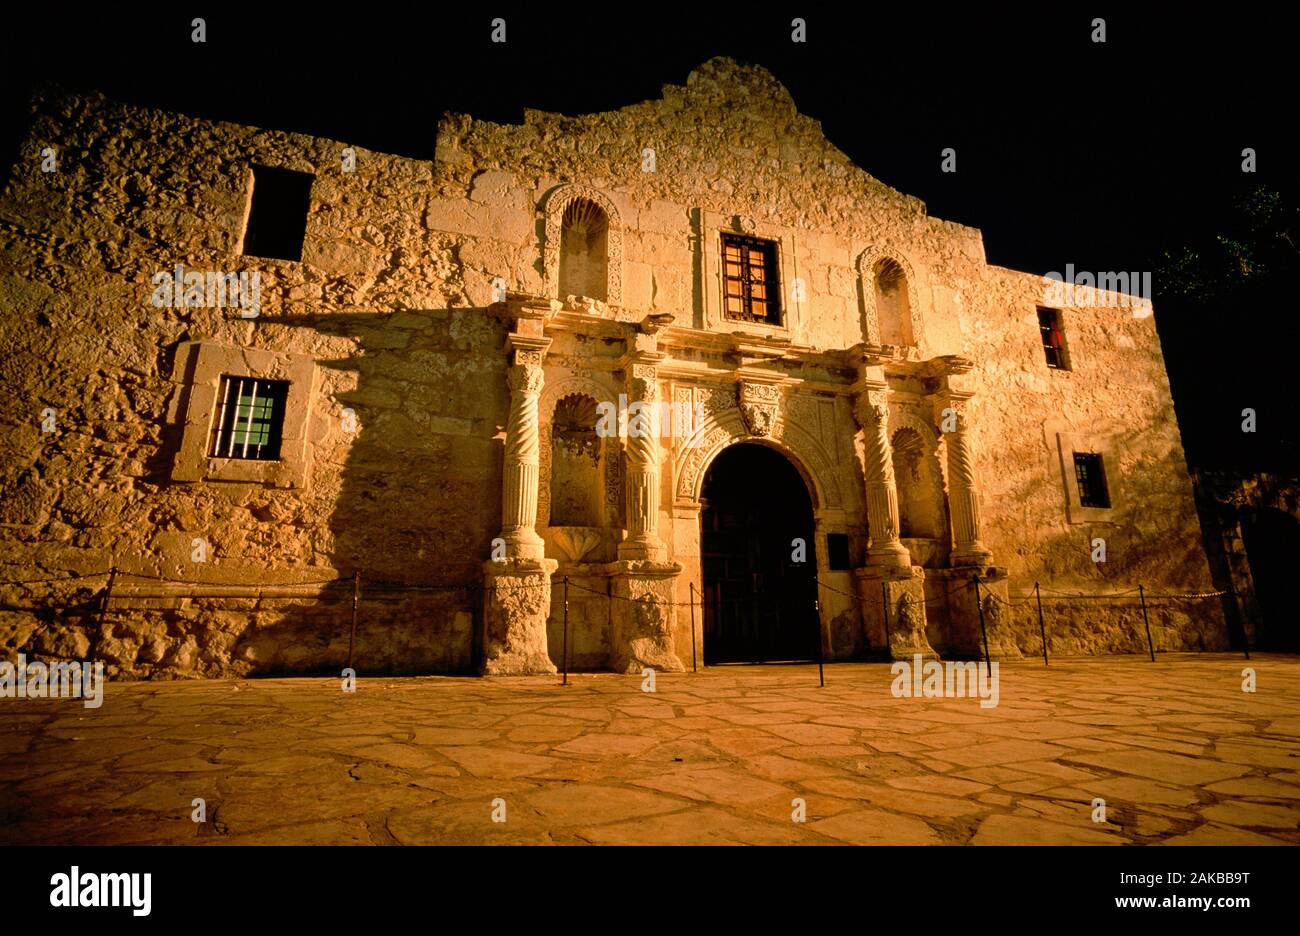 Die Alamo museum Gebäude Außenansicht bei Nacht, San Antonio, Texas, USA Stockfoto